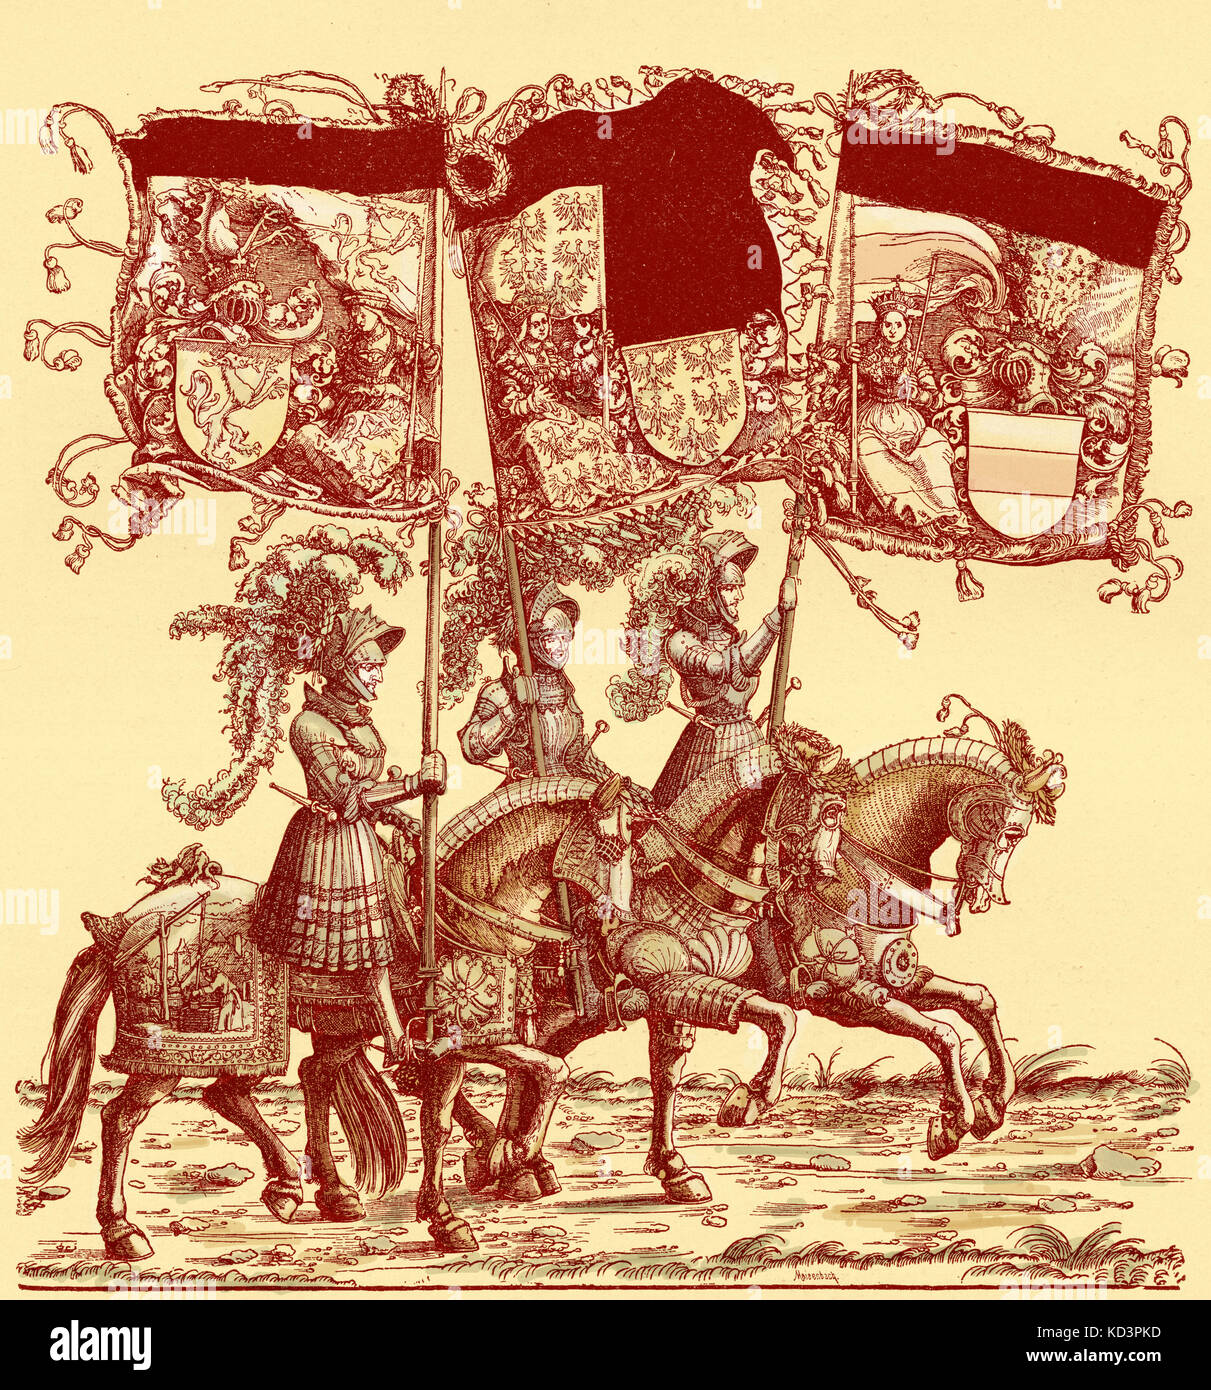 Fahnenträger zu Pferd, Triumphzug von Maximilian I., Heiliger römischer Kaiser (22. März 1459 - 12. Januar 1519). Holzschnitt-Illustration von Hans Burgkmair (1472 - 1531) Stockfoto